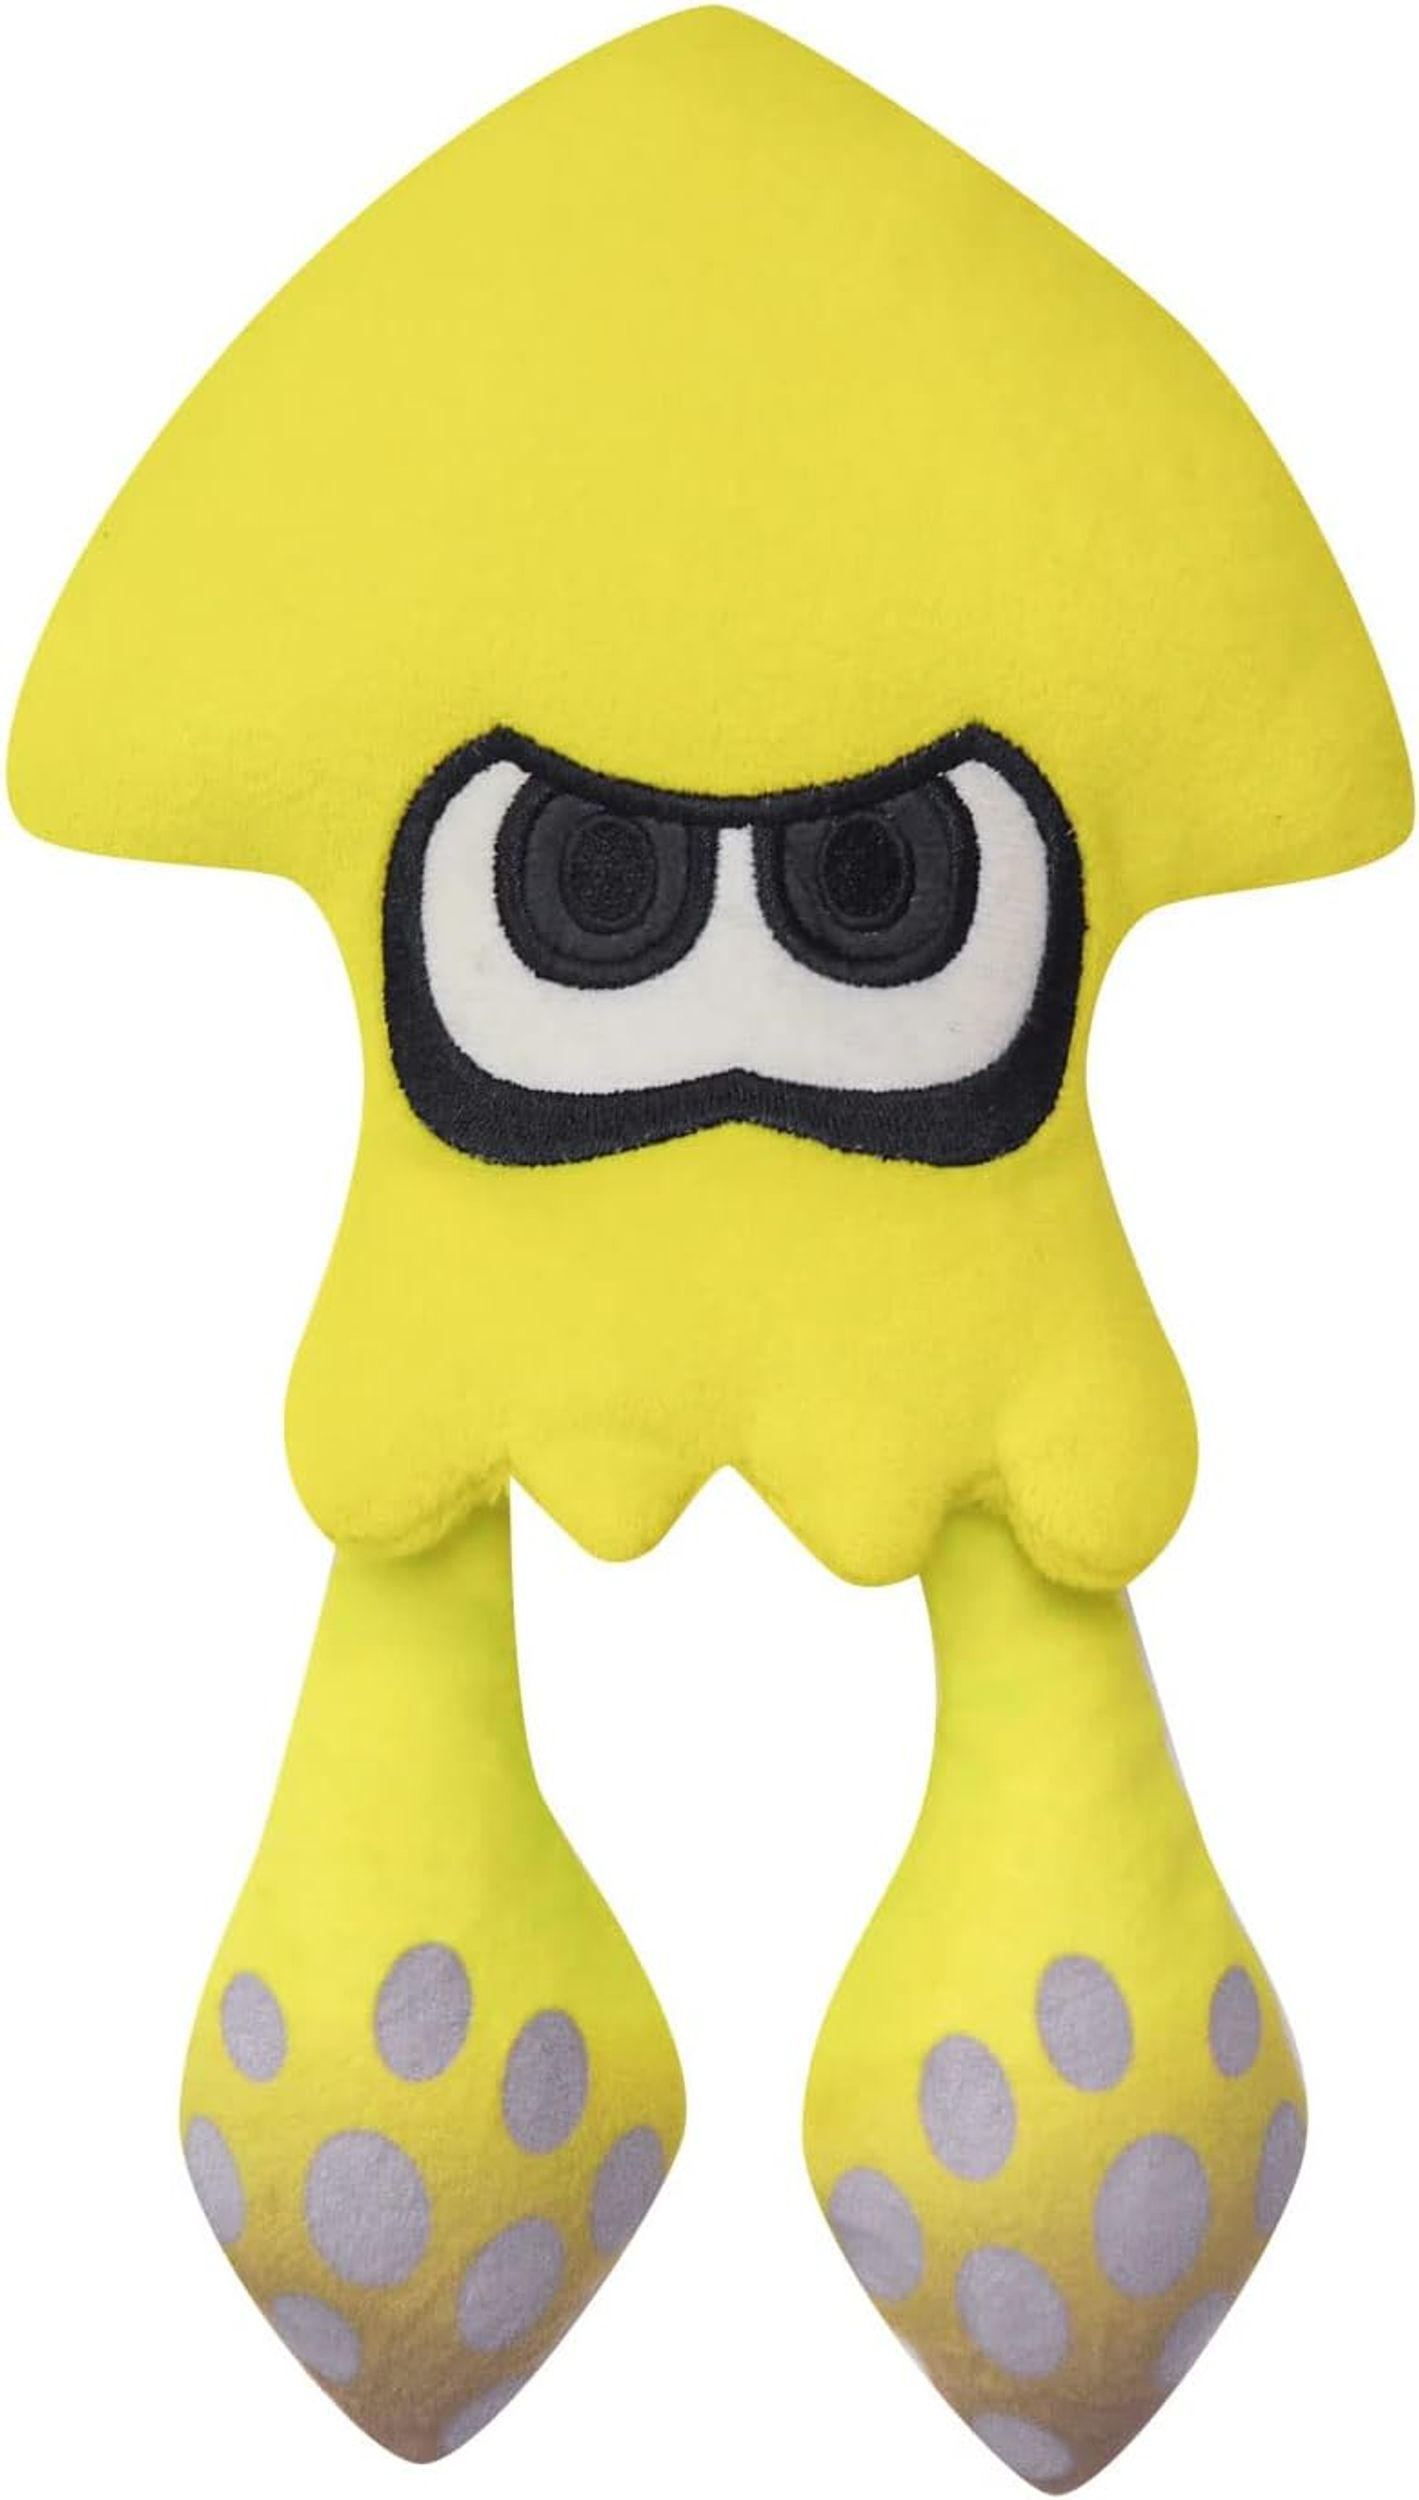 NINTENDO Splatoon Squid gelb Plüschfigur